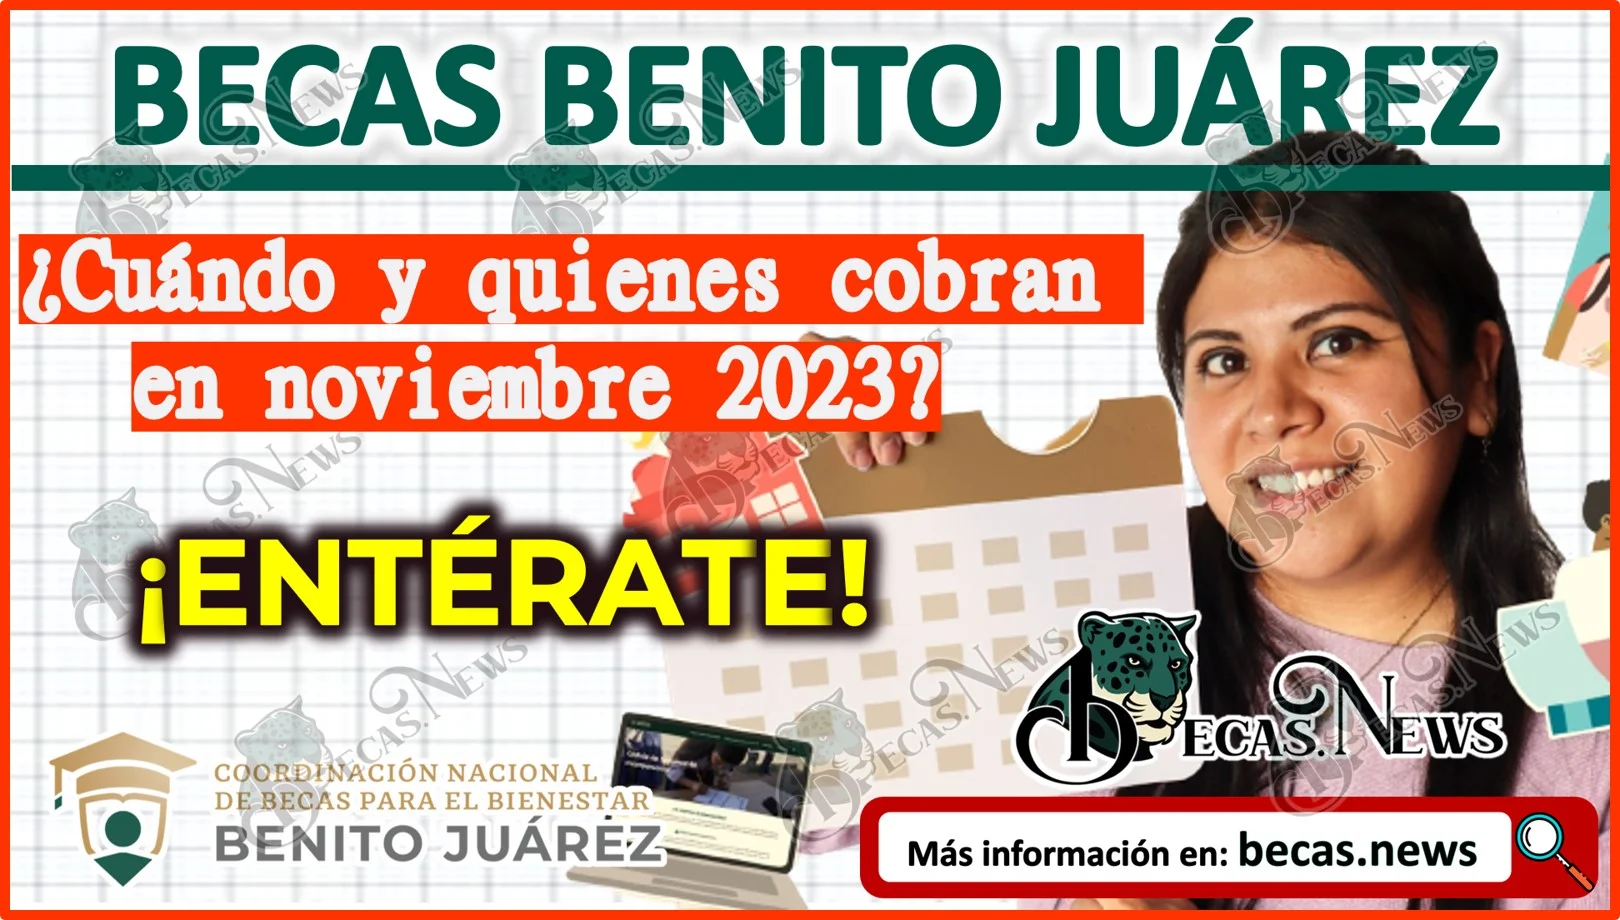 Becas Benito Juárez: ¿Cuándo y quienes cobran en noviembre 2023? ¡Entérate!